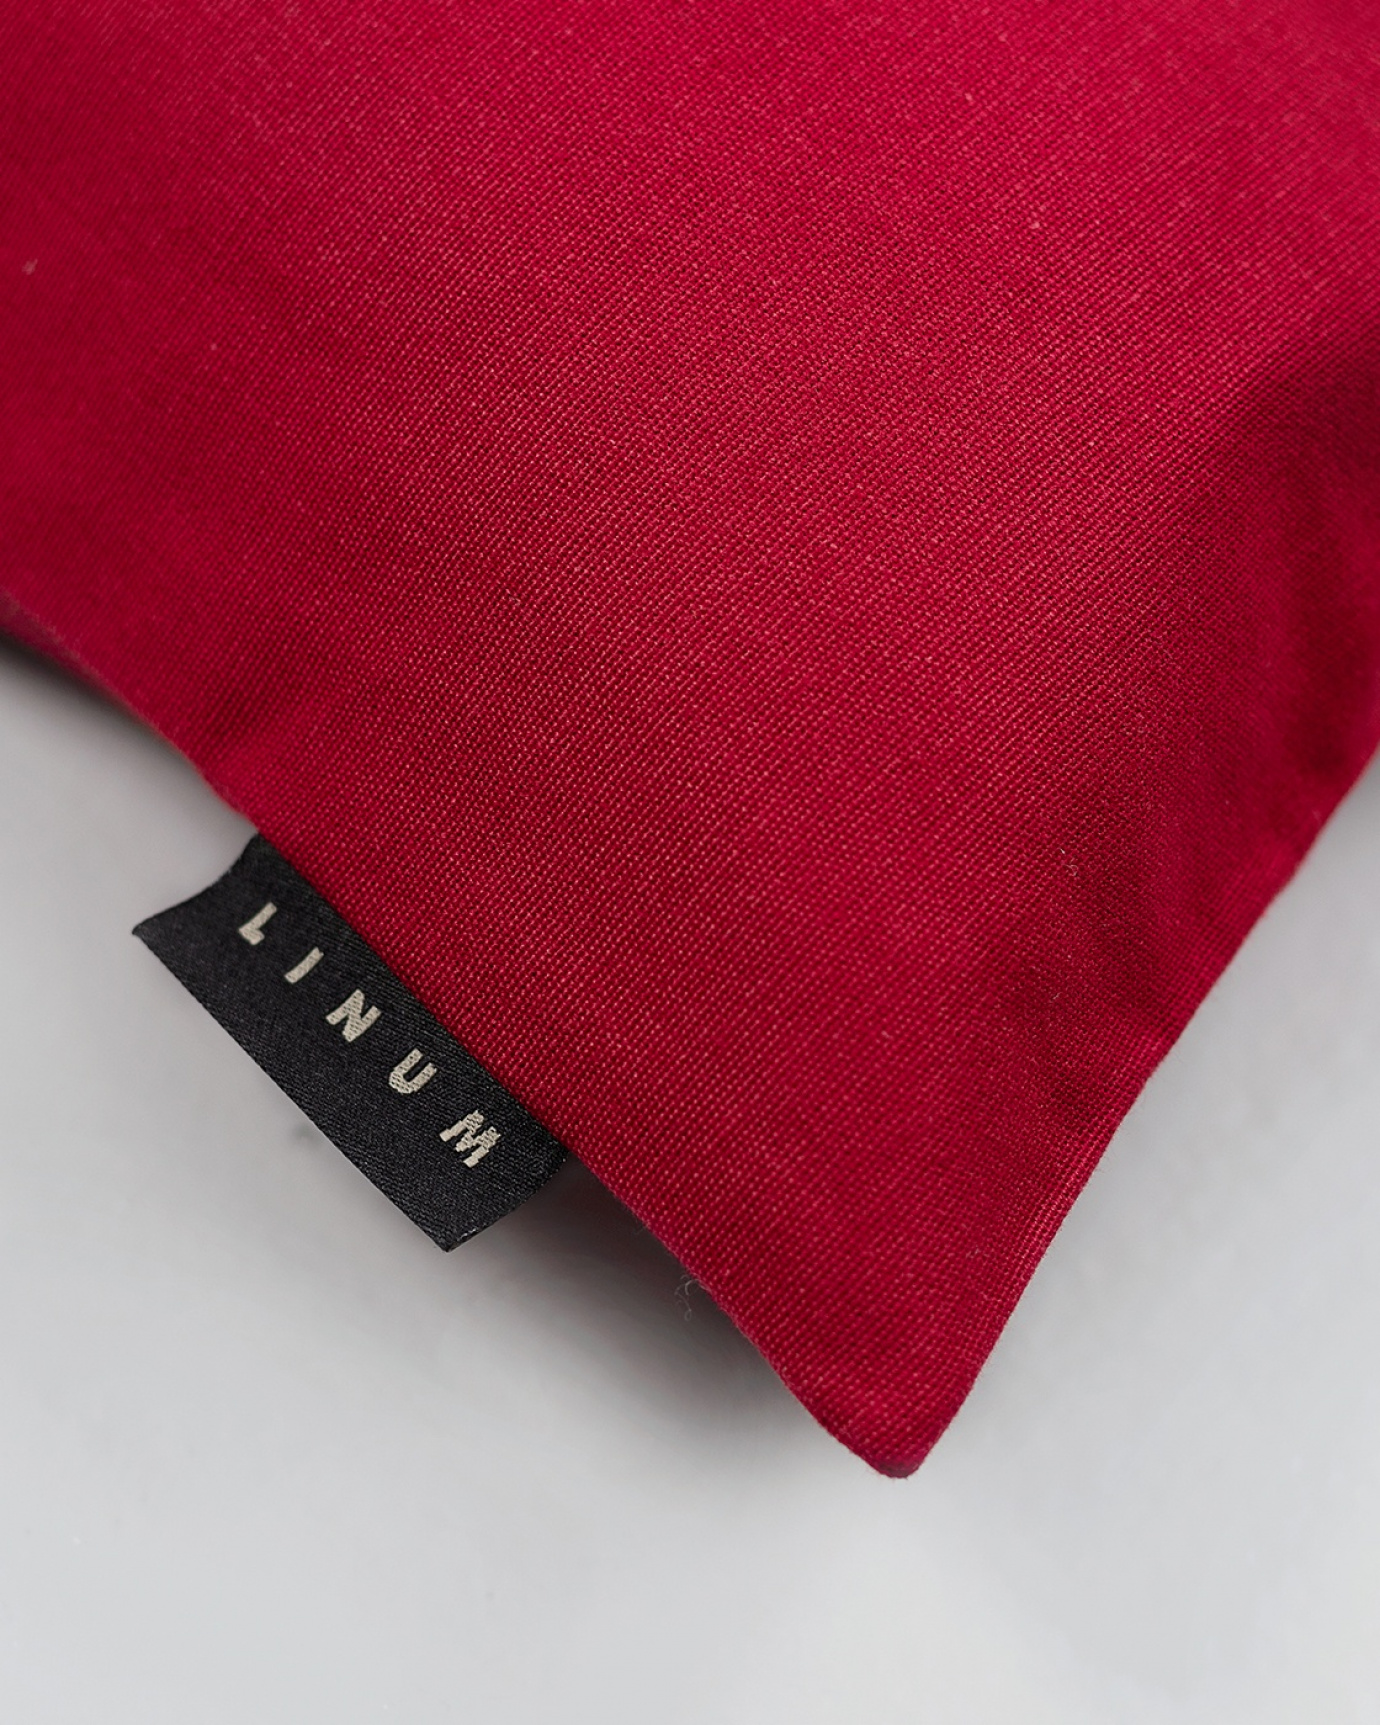 ANNABELL Cushion cover 50x50 cm Red, bild 2 